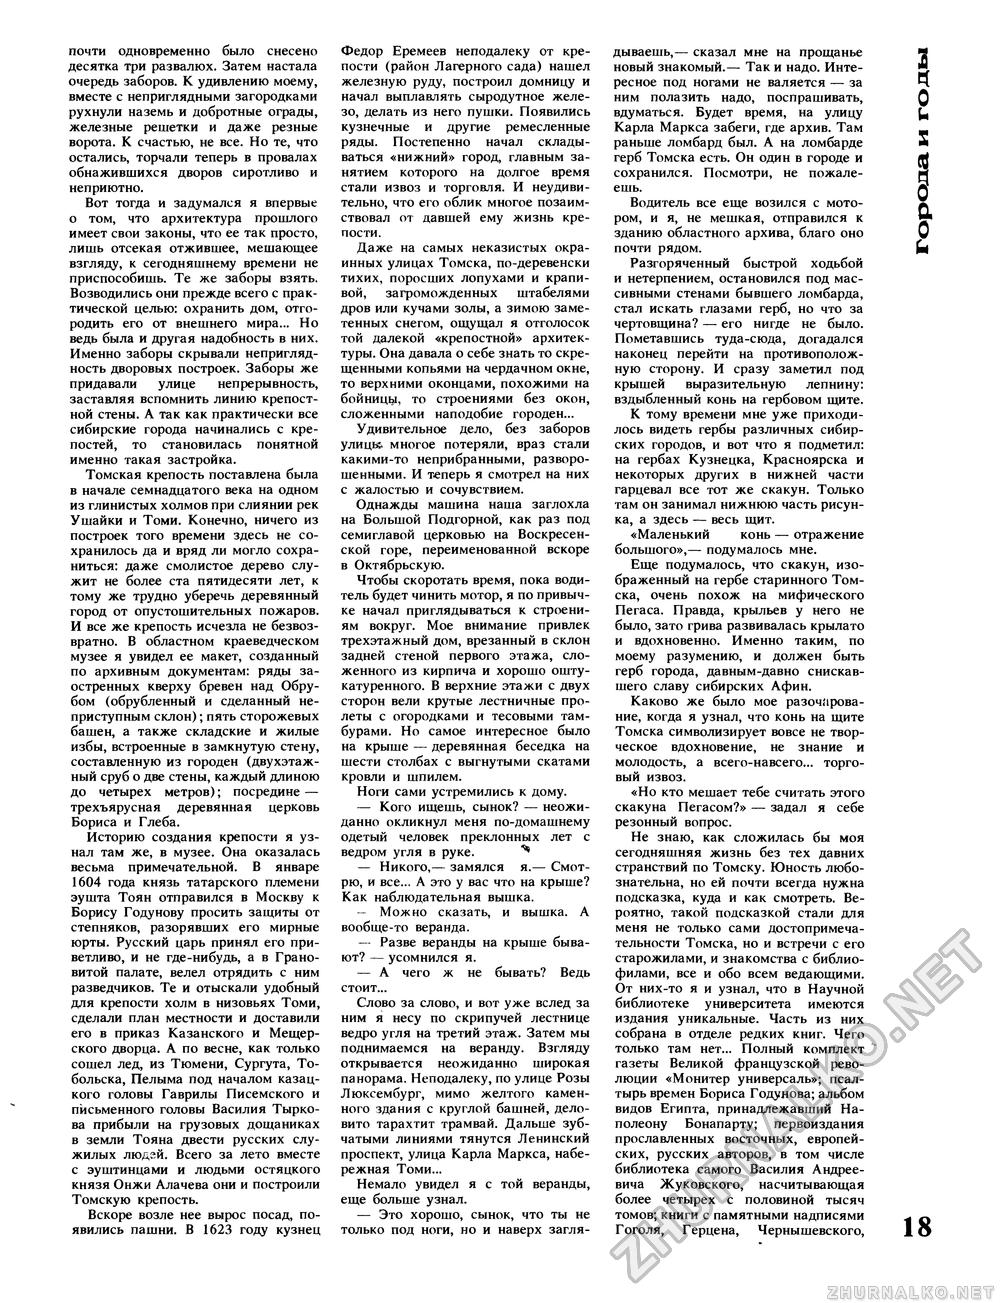 Вокруг света 1987-05, страница 20